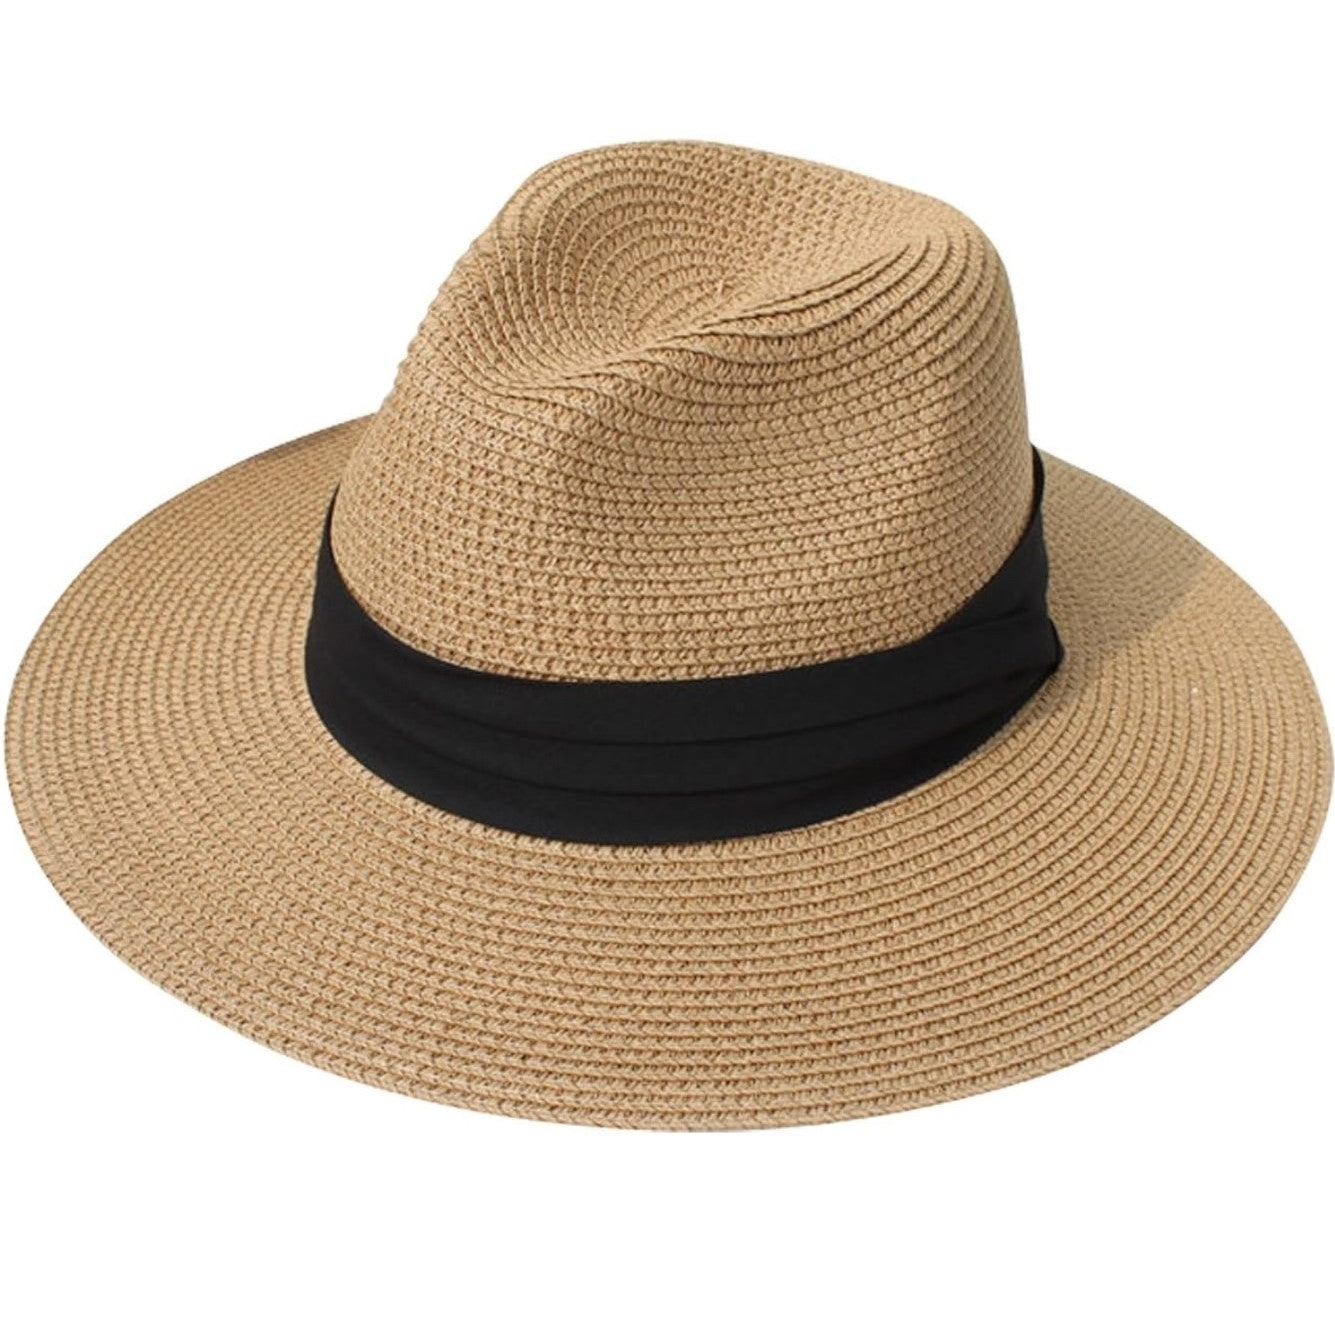 Fedora Hat with Wide Brim